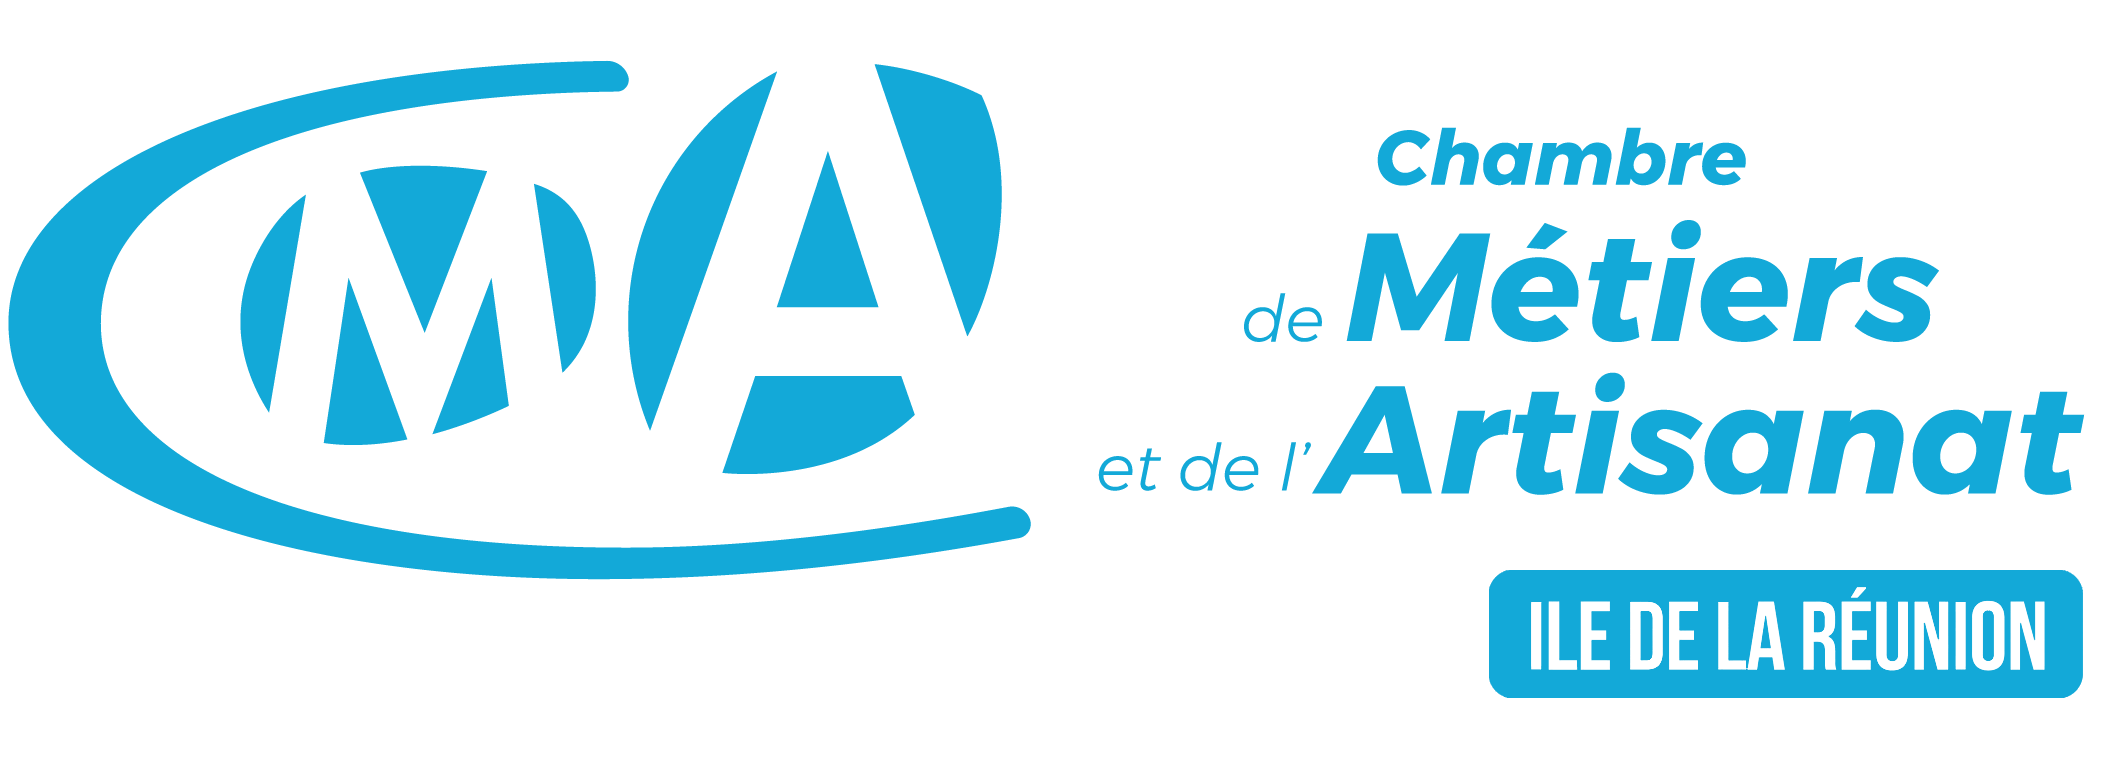 Logo chambre des métiers